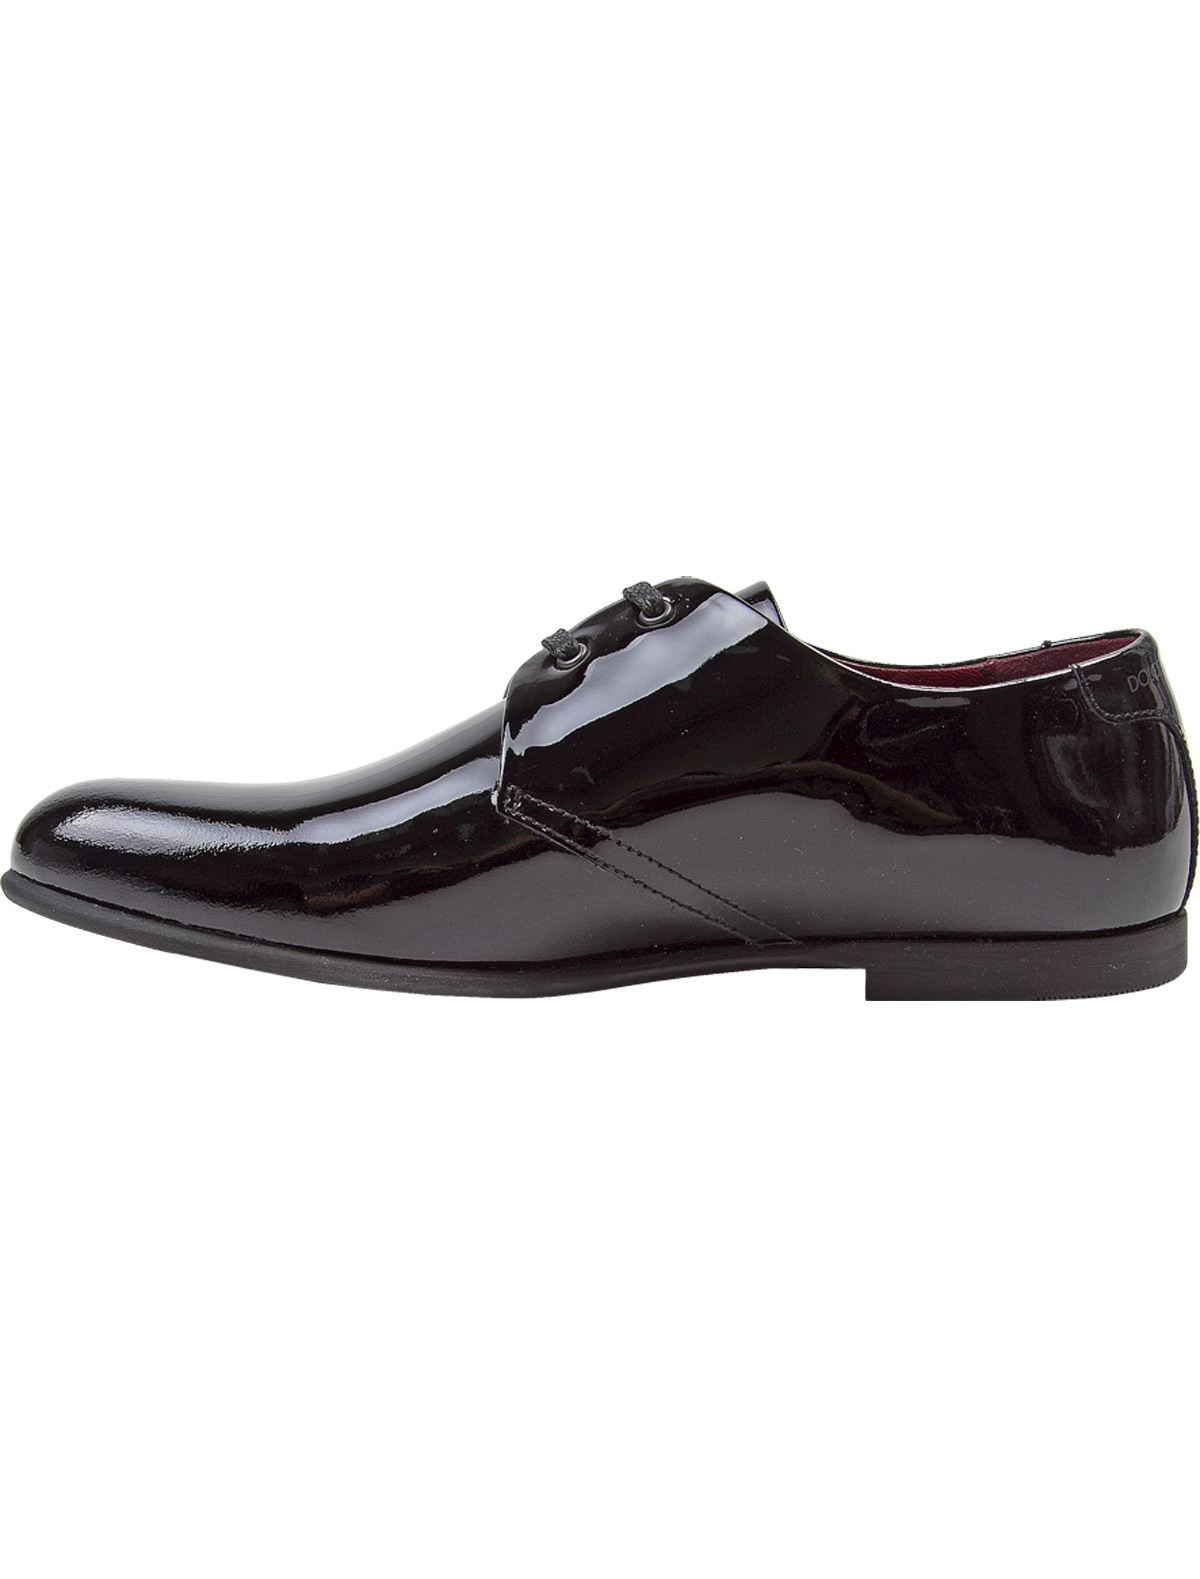 Туфли Dolce & Gabbana 1913243, цвет черный, размер 31 2011119880313 - фото 5